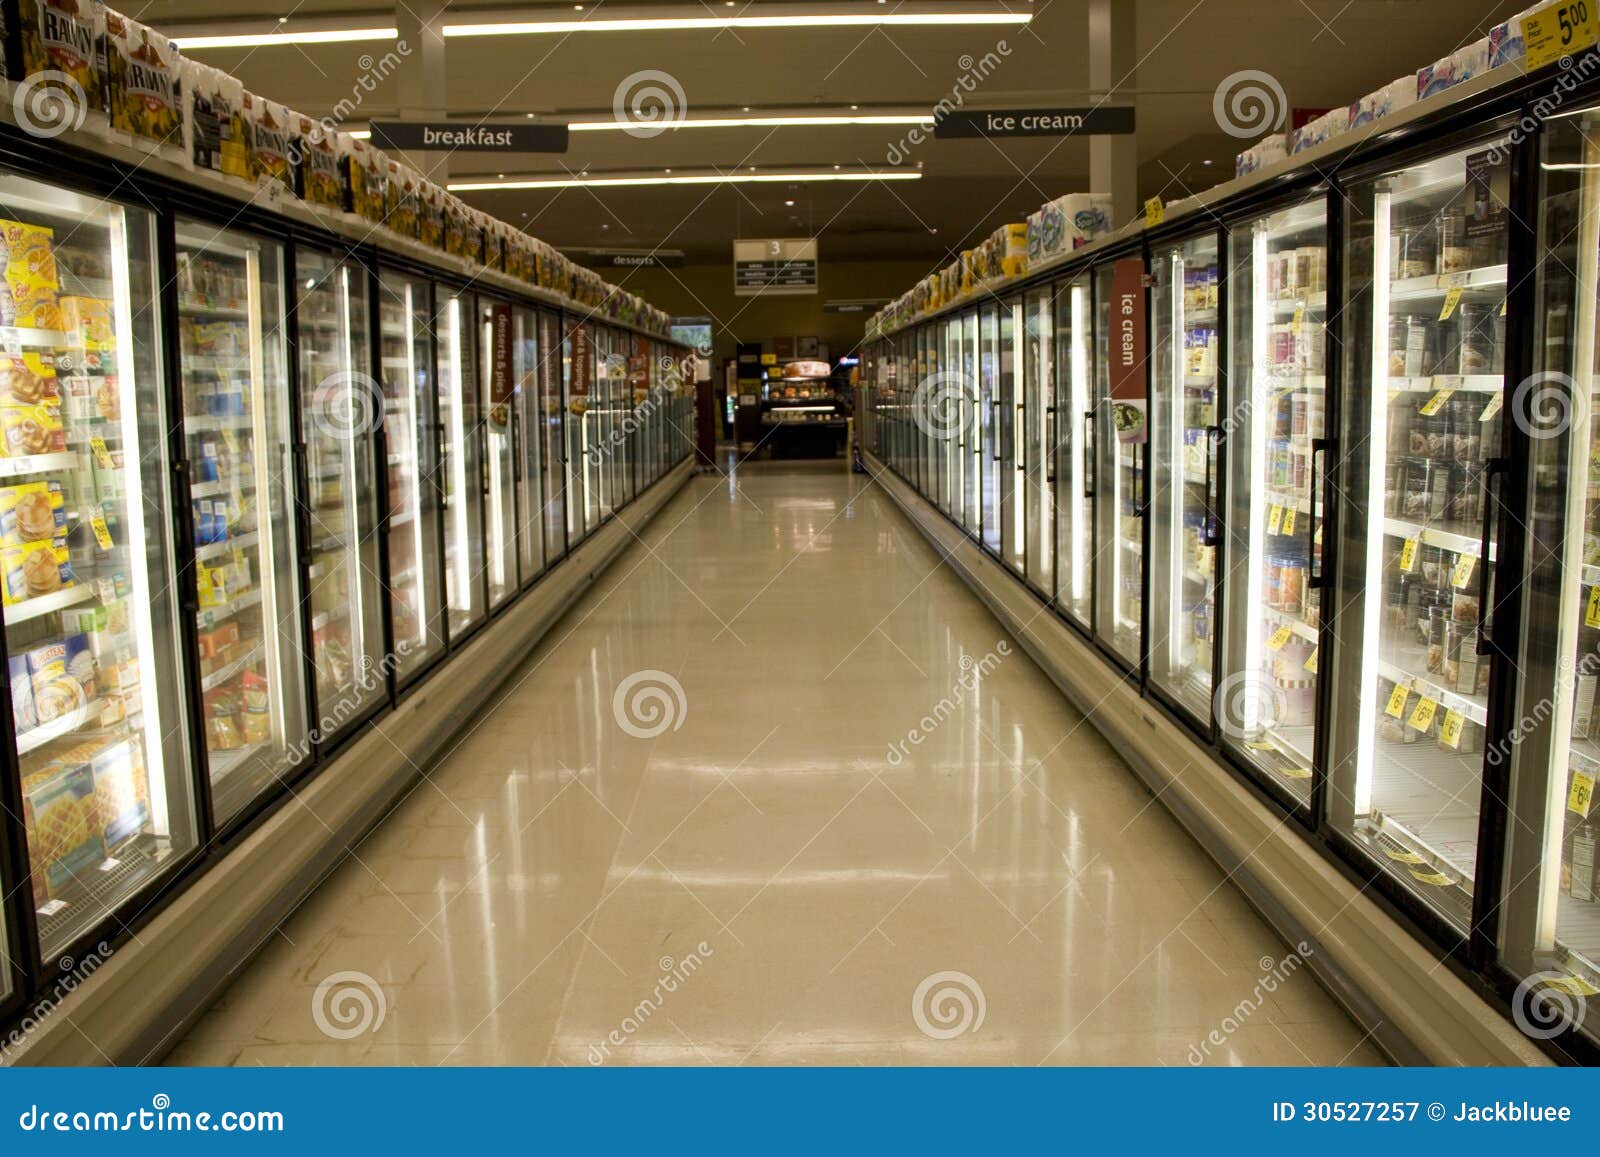 Comida congelada en supermercado. Porciones de comida congelada en un supermercado.